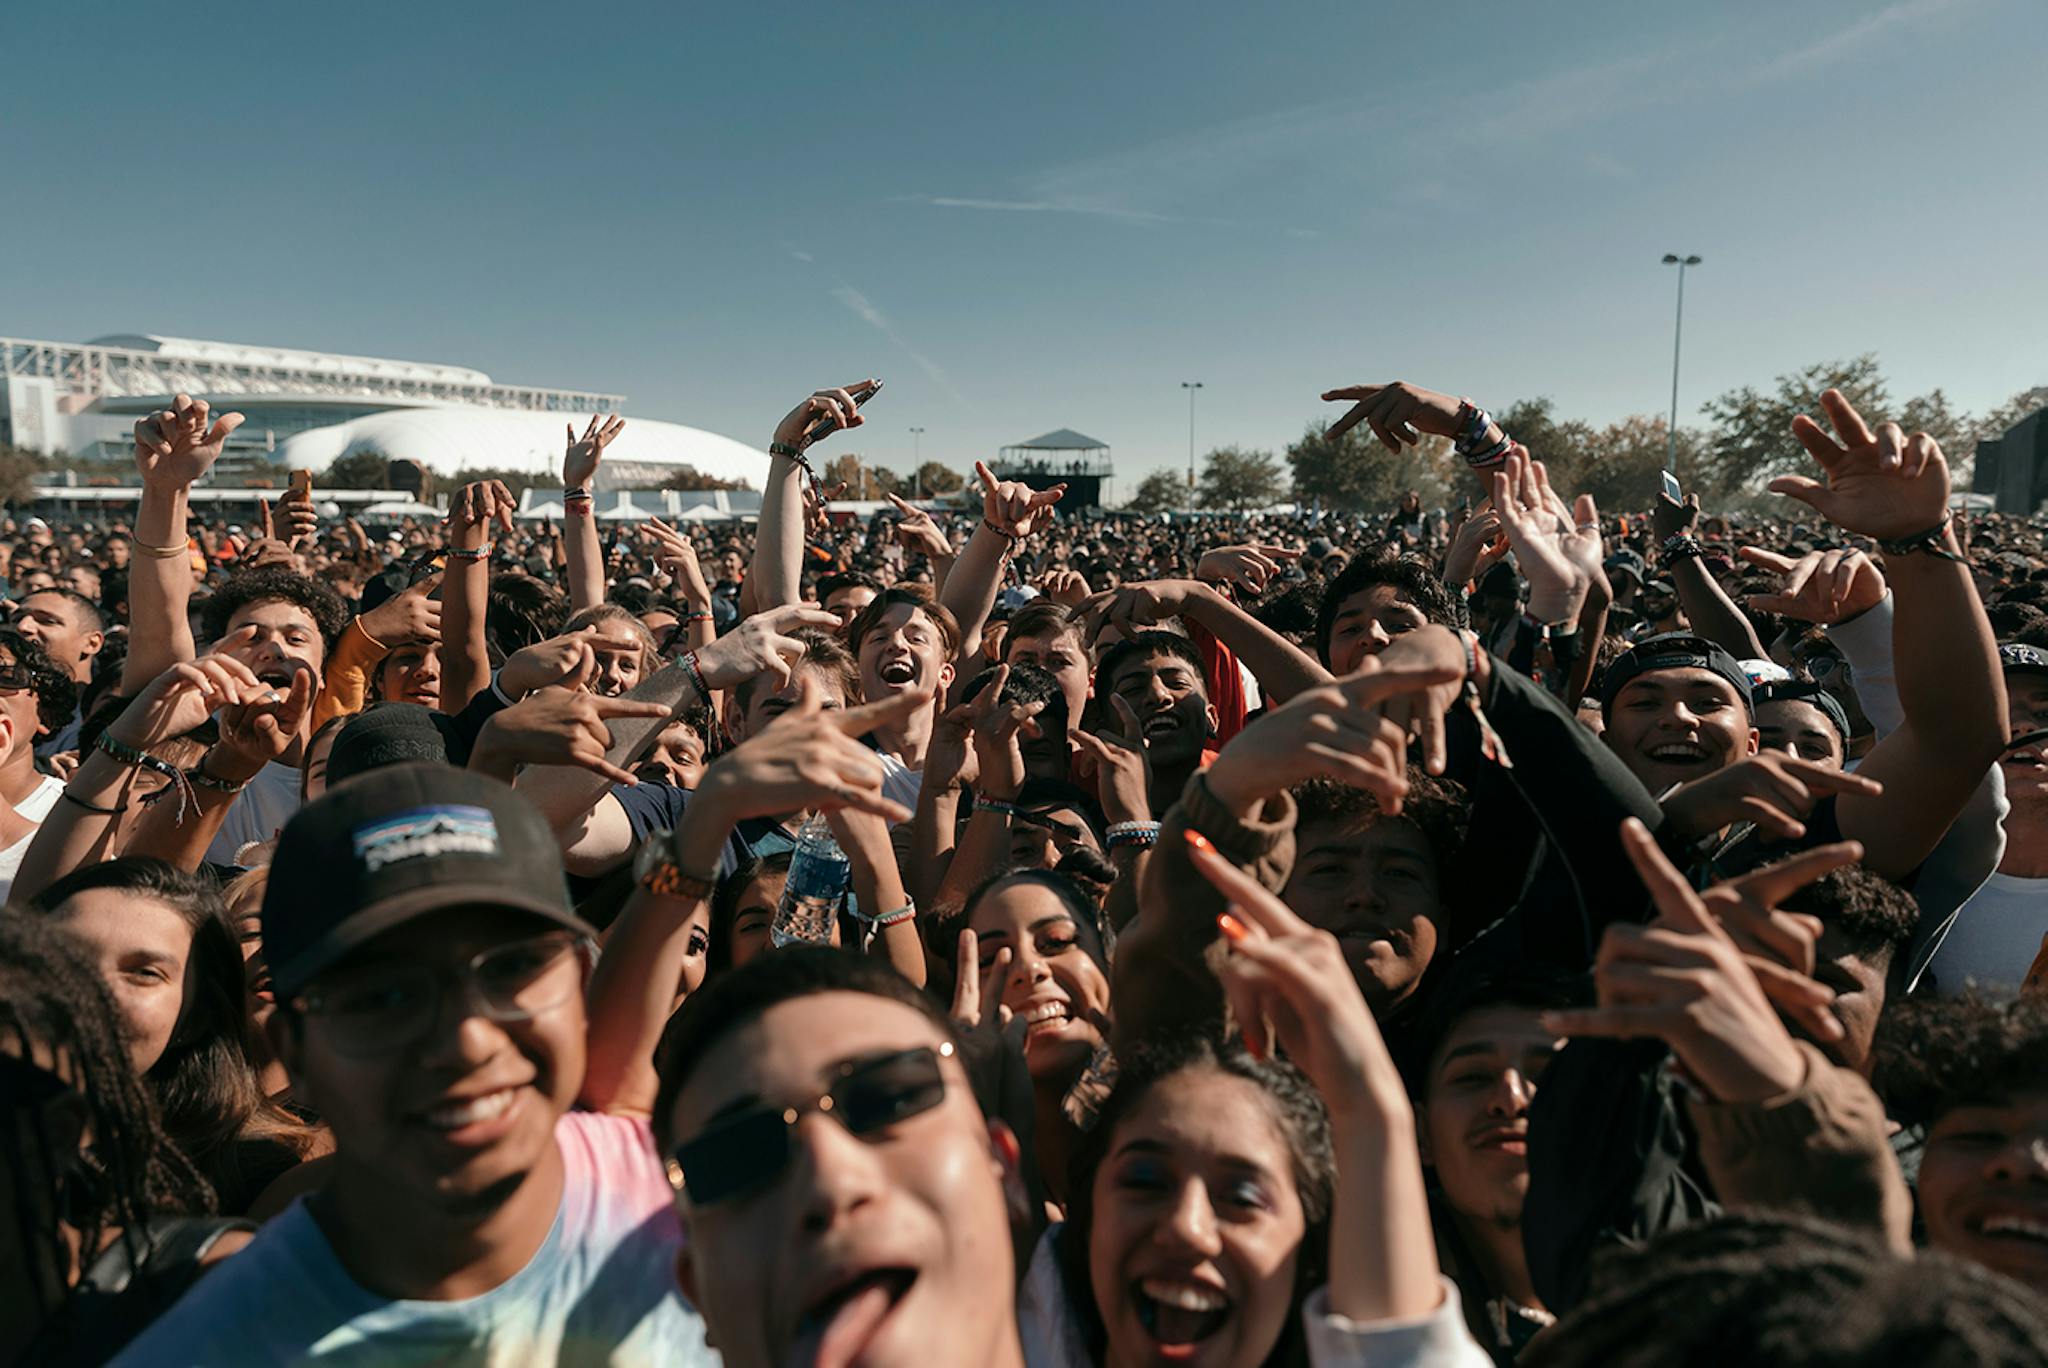 Astroworld crowd selfie